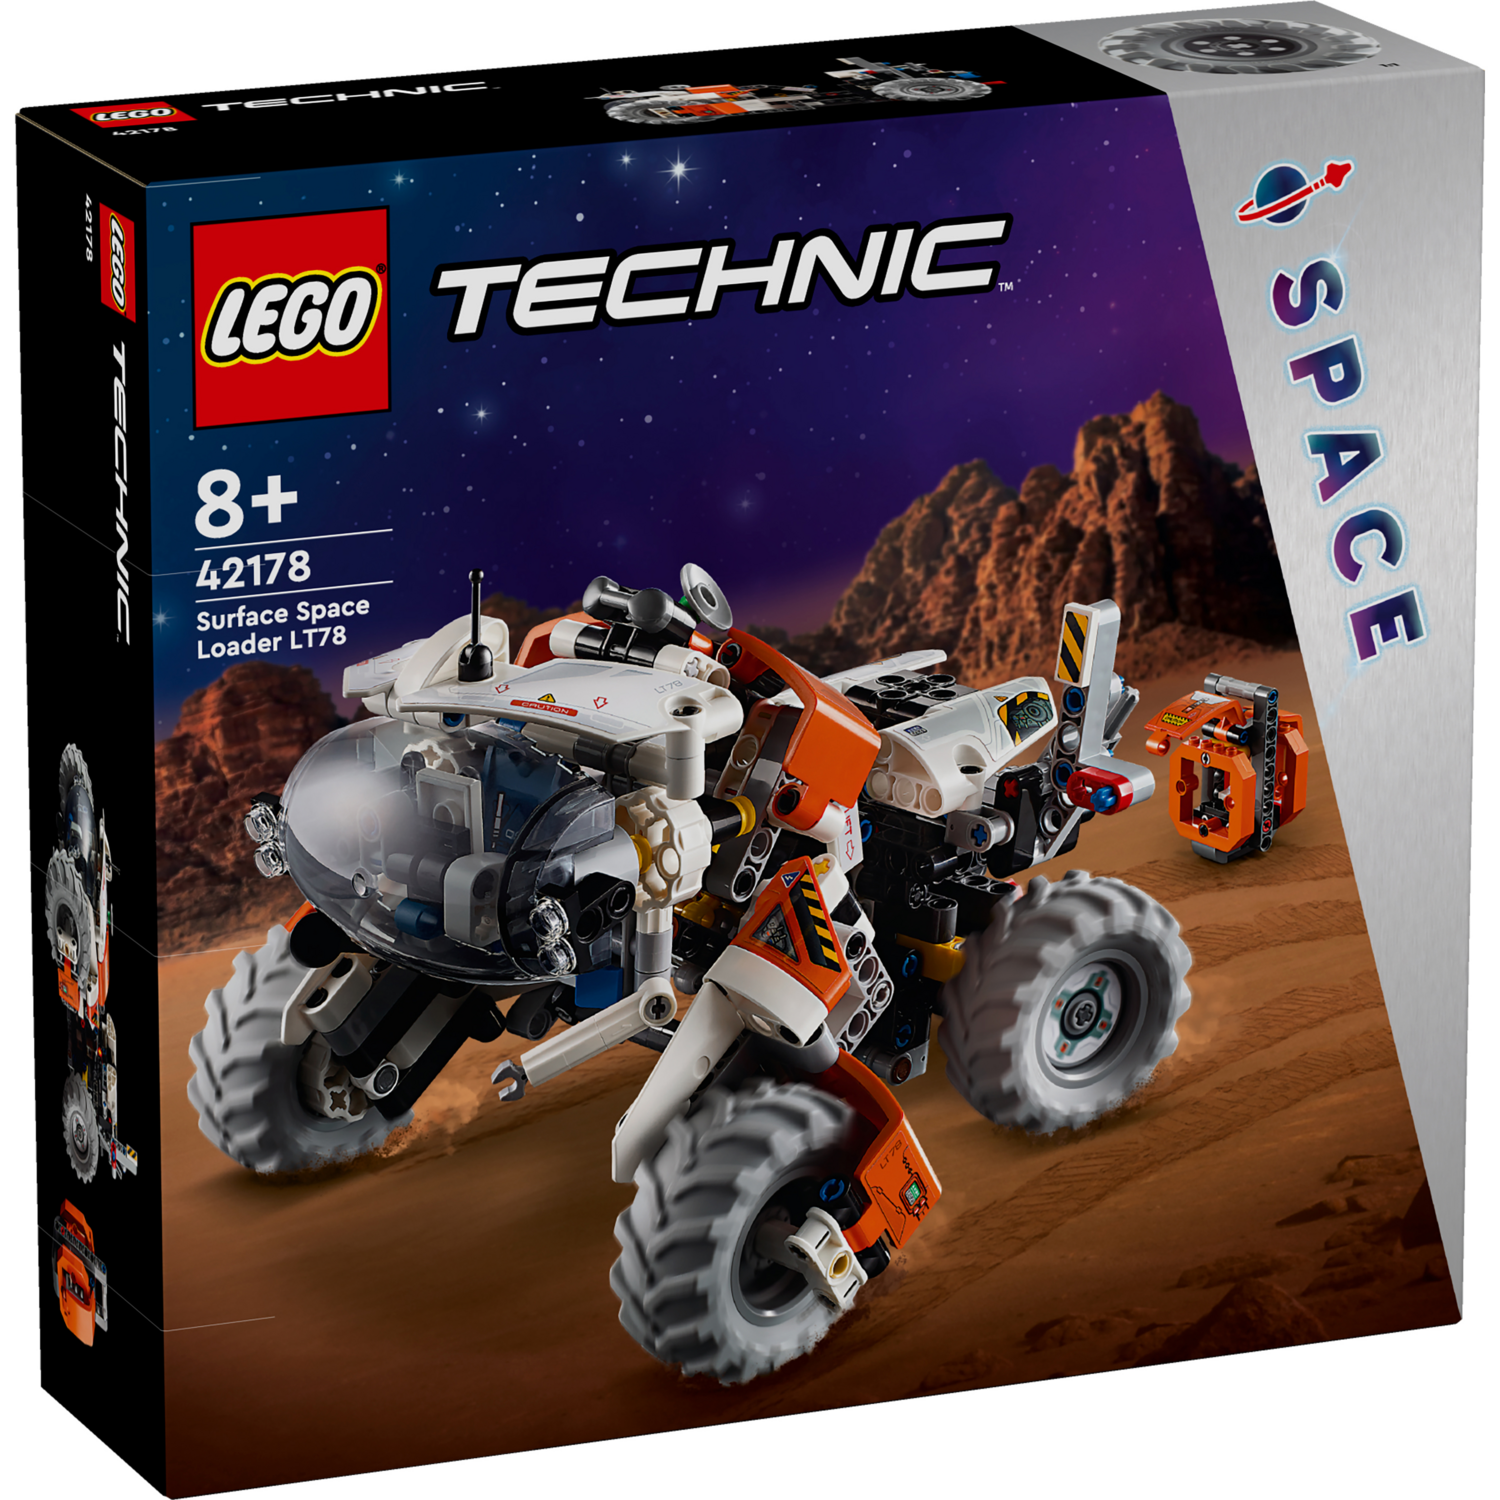 Конструктор LEGO Technic Космический колесный погрузчик LT78 (42178) фото 